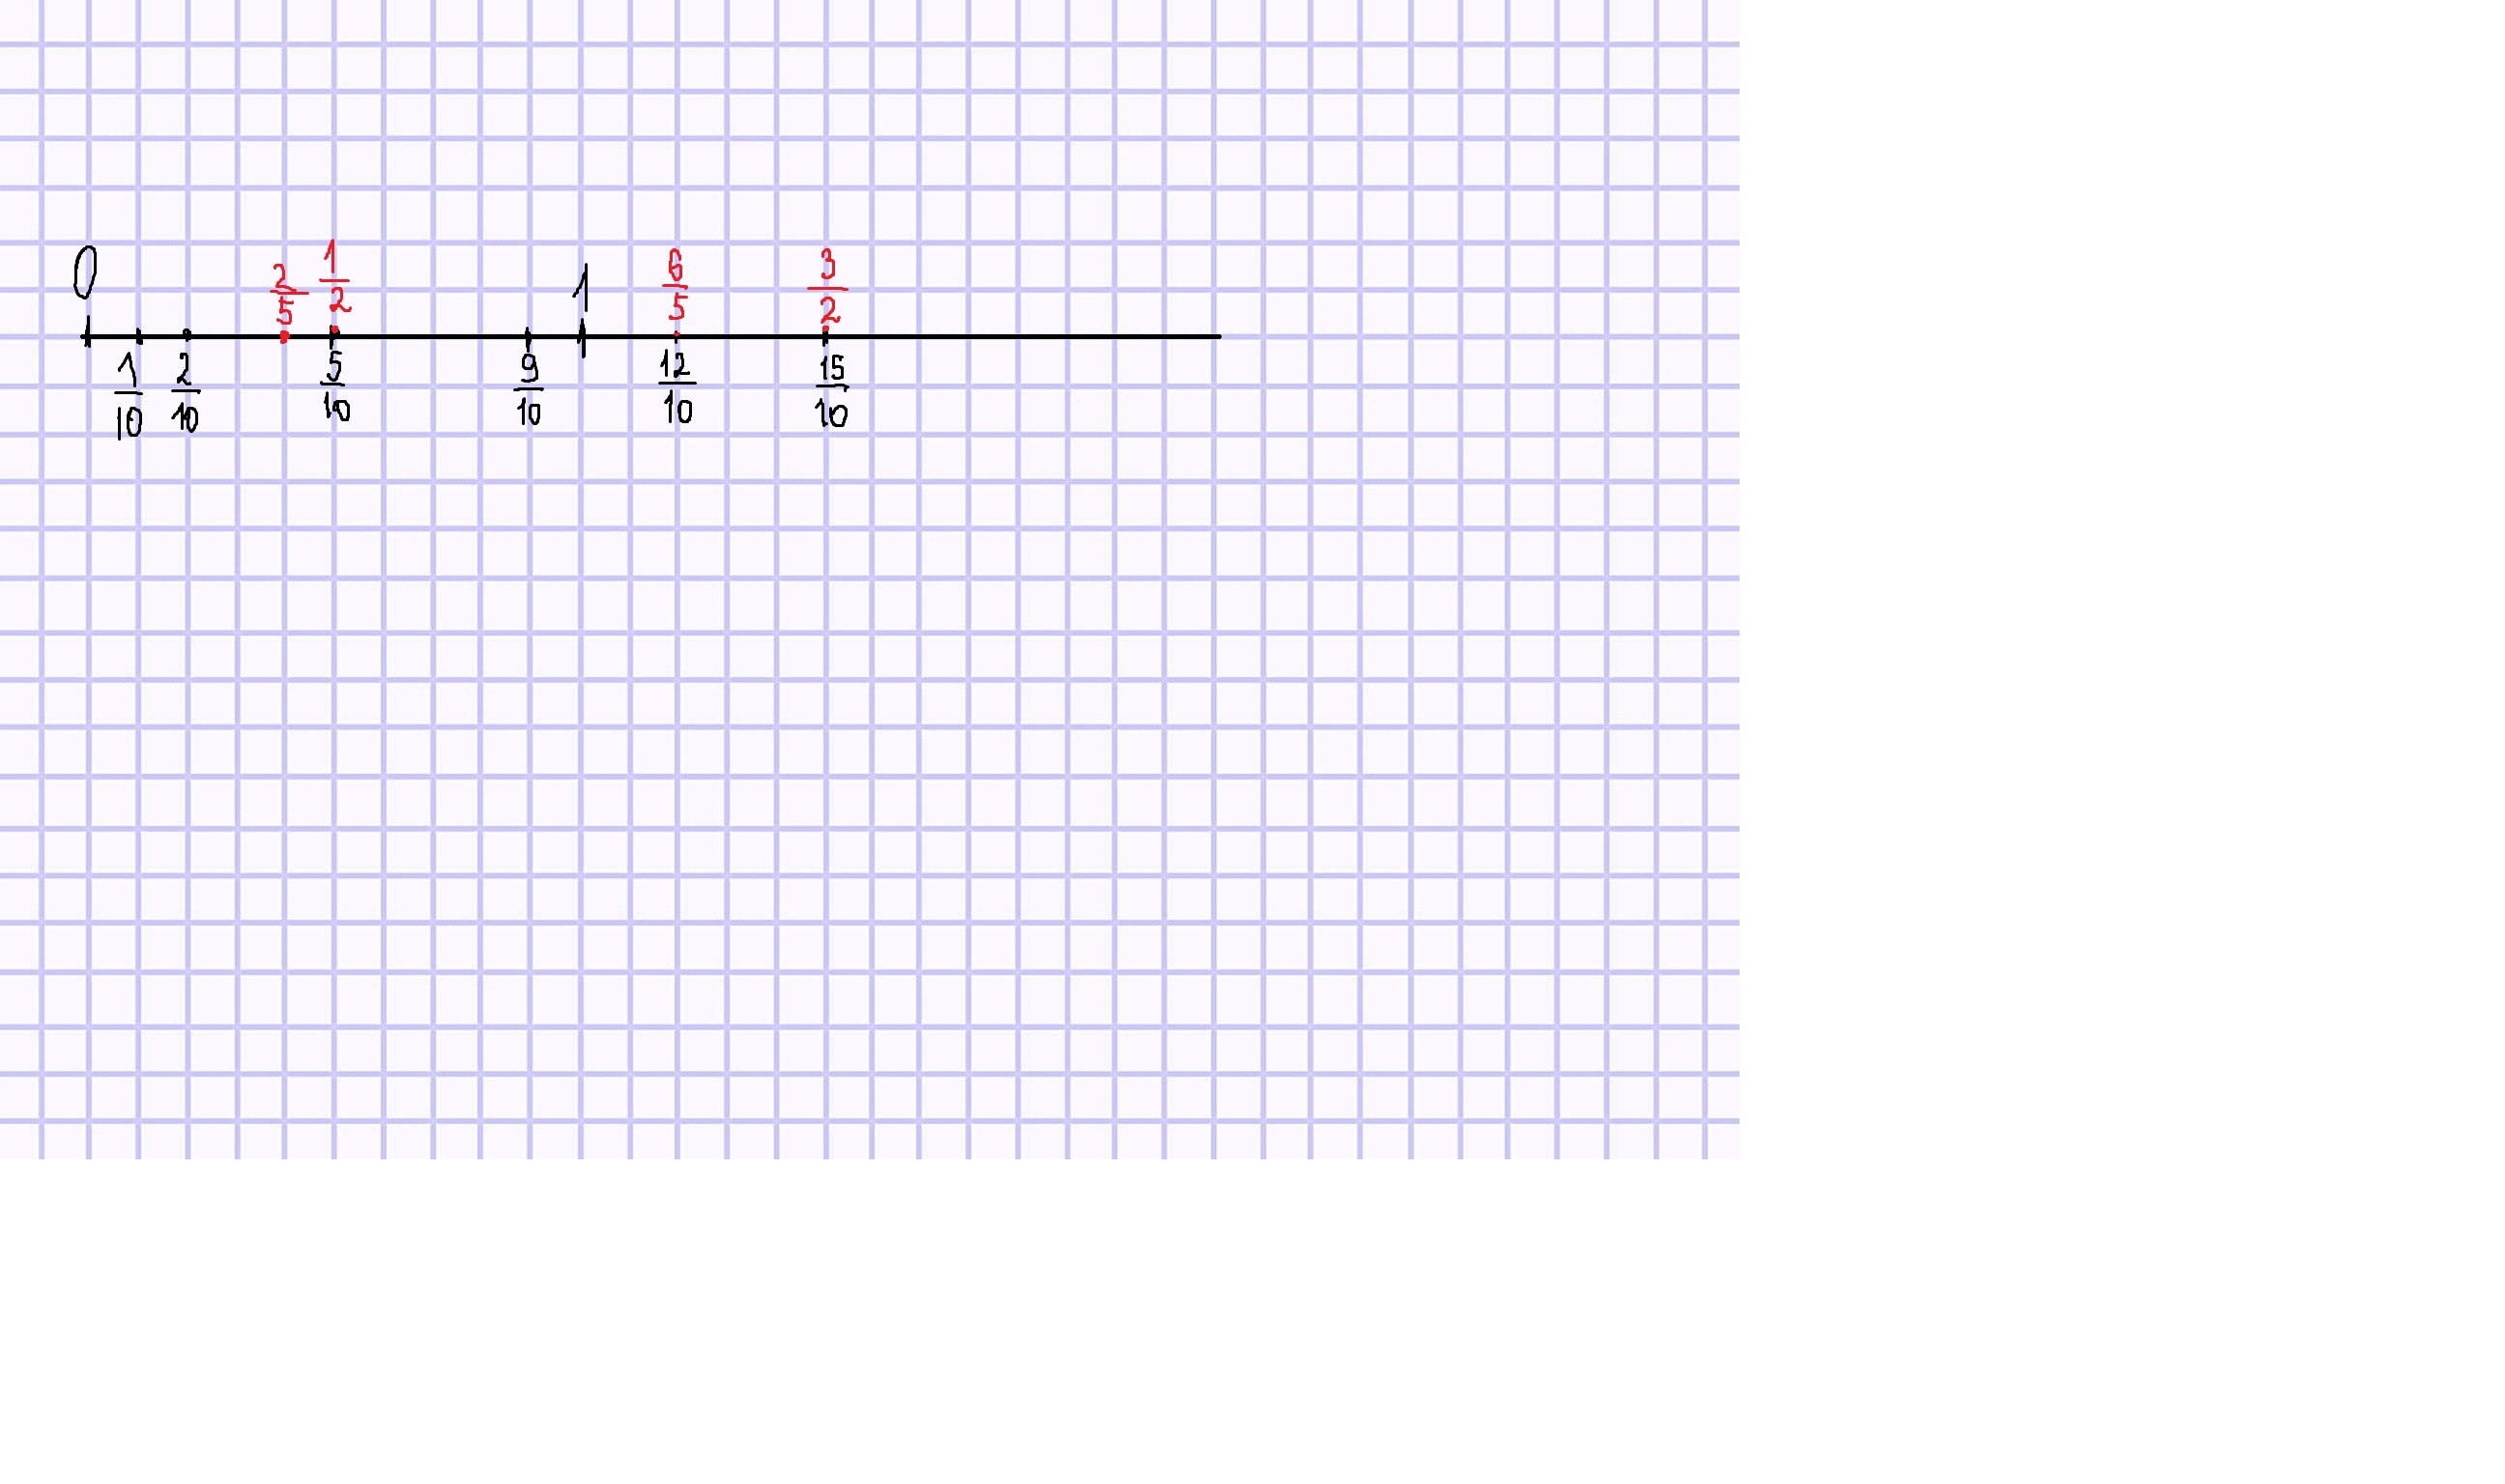 Изобрази координатную ось выбрав удобный единичный отрезок. Единичный отрезок на координатной прямой. Координатная прямая с единичным отрезком. Единичный отрезок 1 клетка. Изобразите на координатной оси с единичным отрезком 4 см точки.